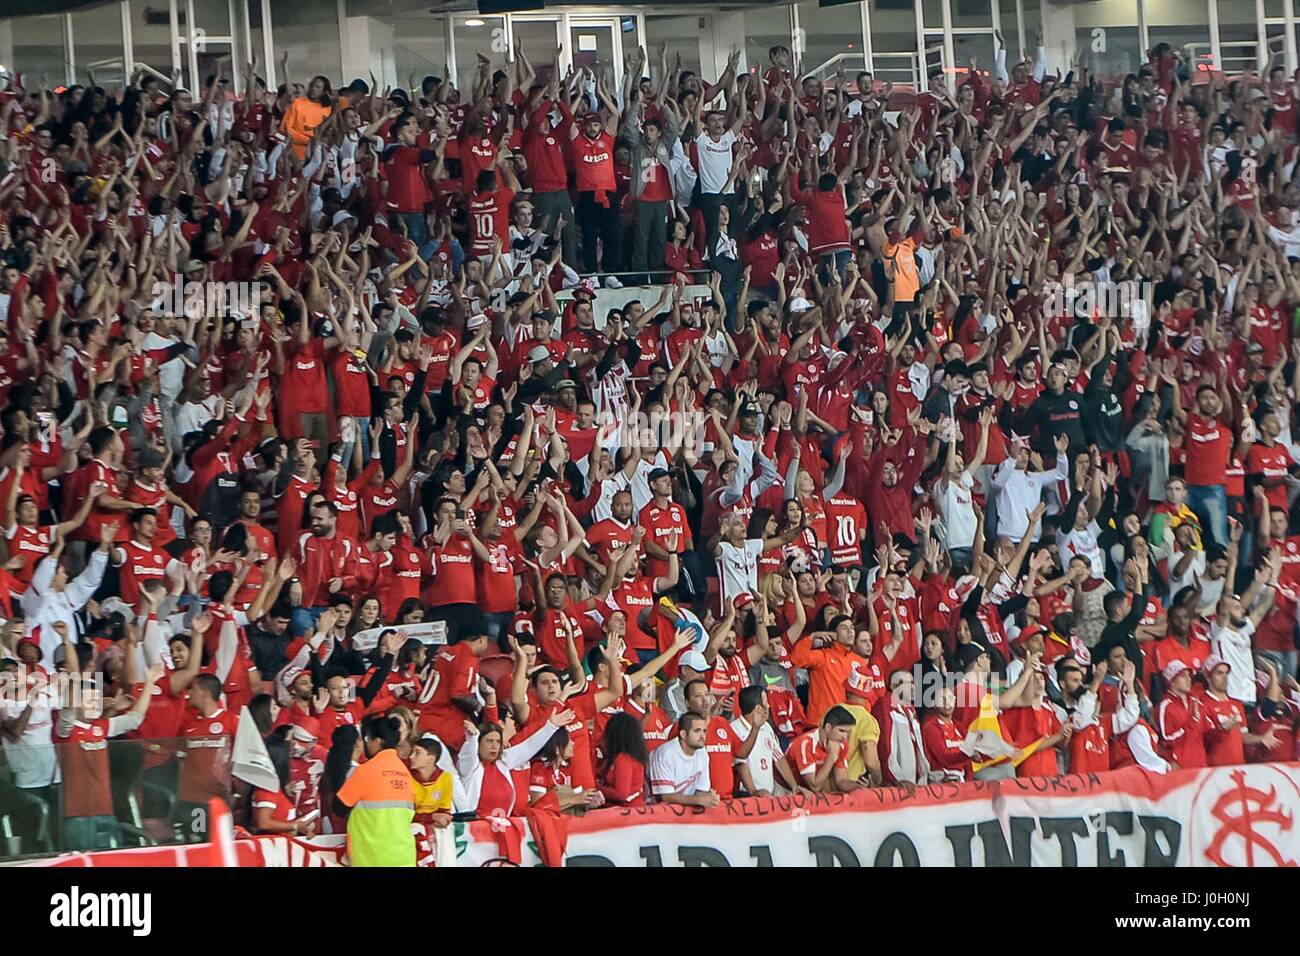 Porto Alegre, Brazil. 12th Apr, 2017. Rio Stadium, Porto Alegre/RS. Credit: Eldio Suzano/FotoArena/Alamy Live News Stock Photo